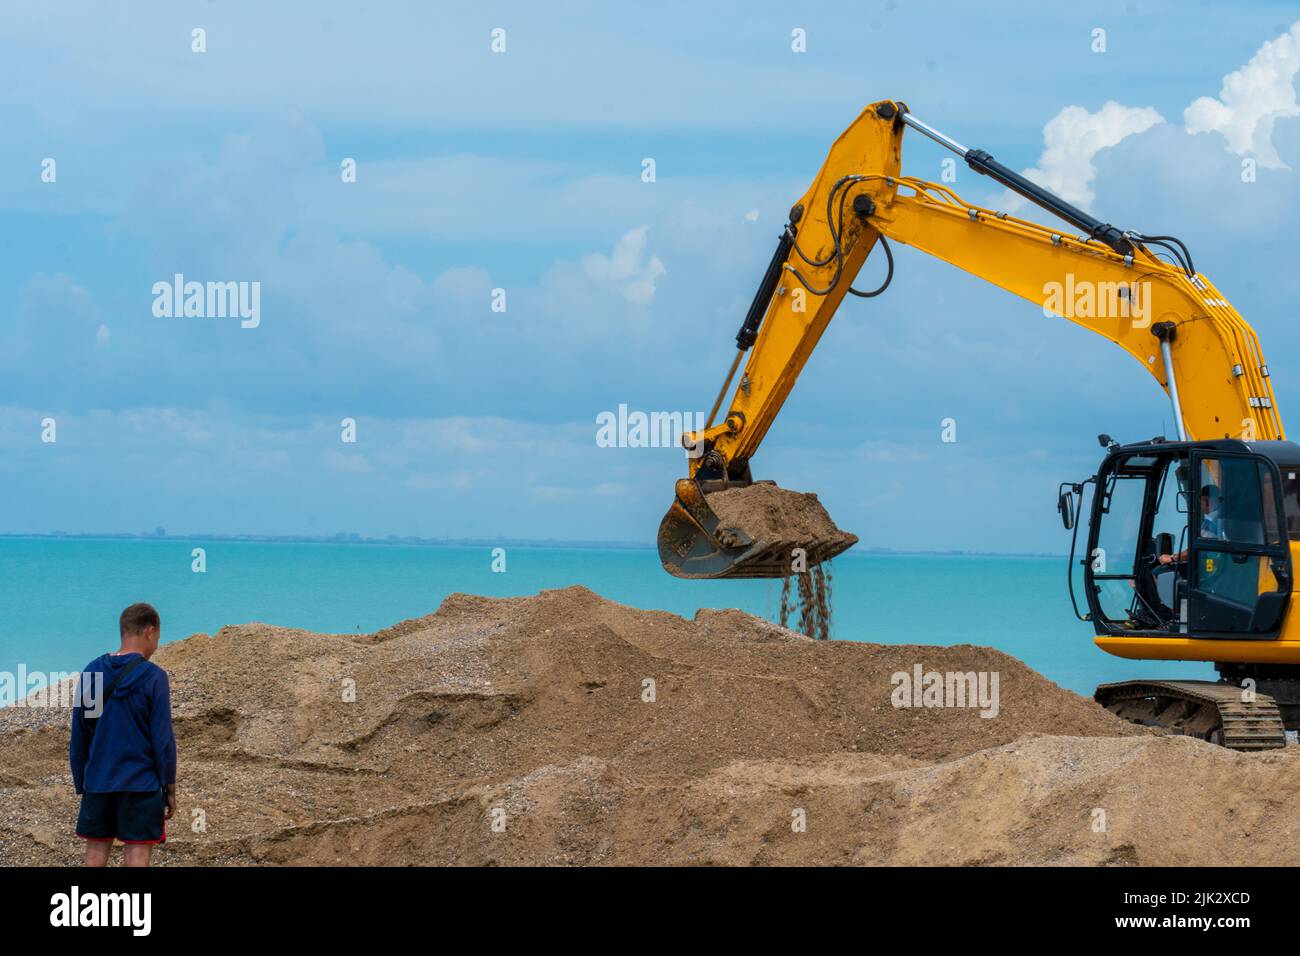 Sea building escavatore demolitore macchine demolizioni industria macchinari natura industriale, dalla struttura delle polveri in tecnologia ed estrazione Foto Stock